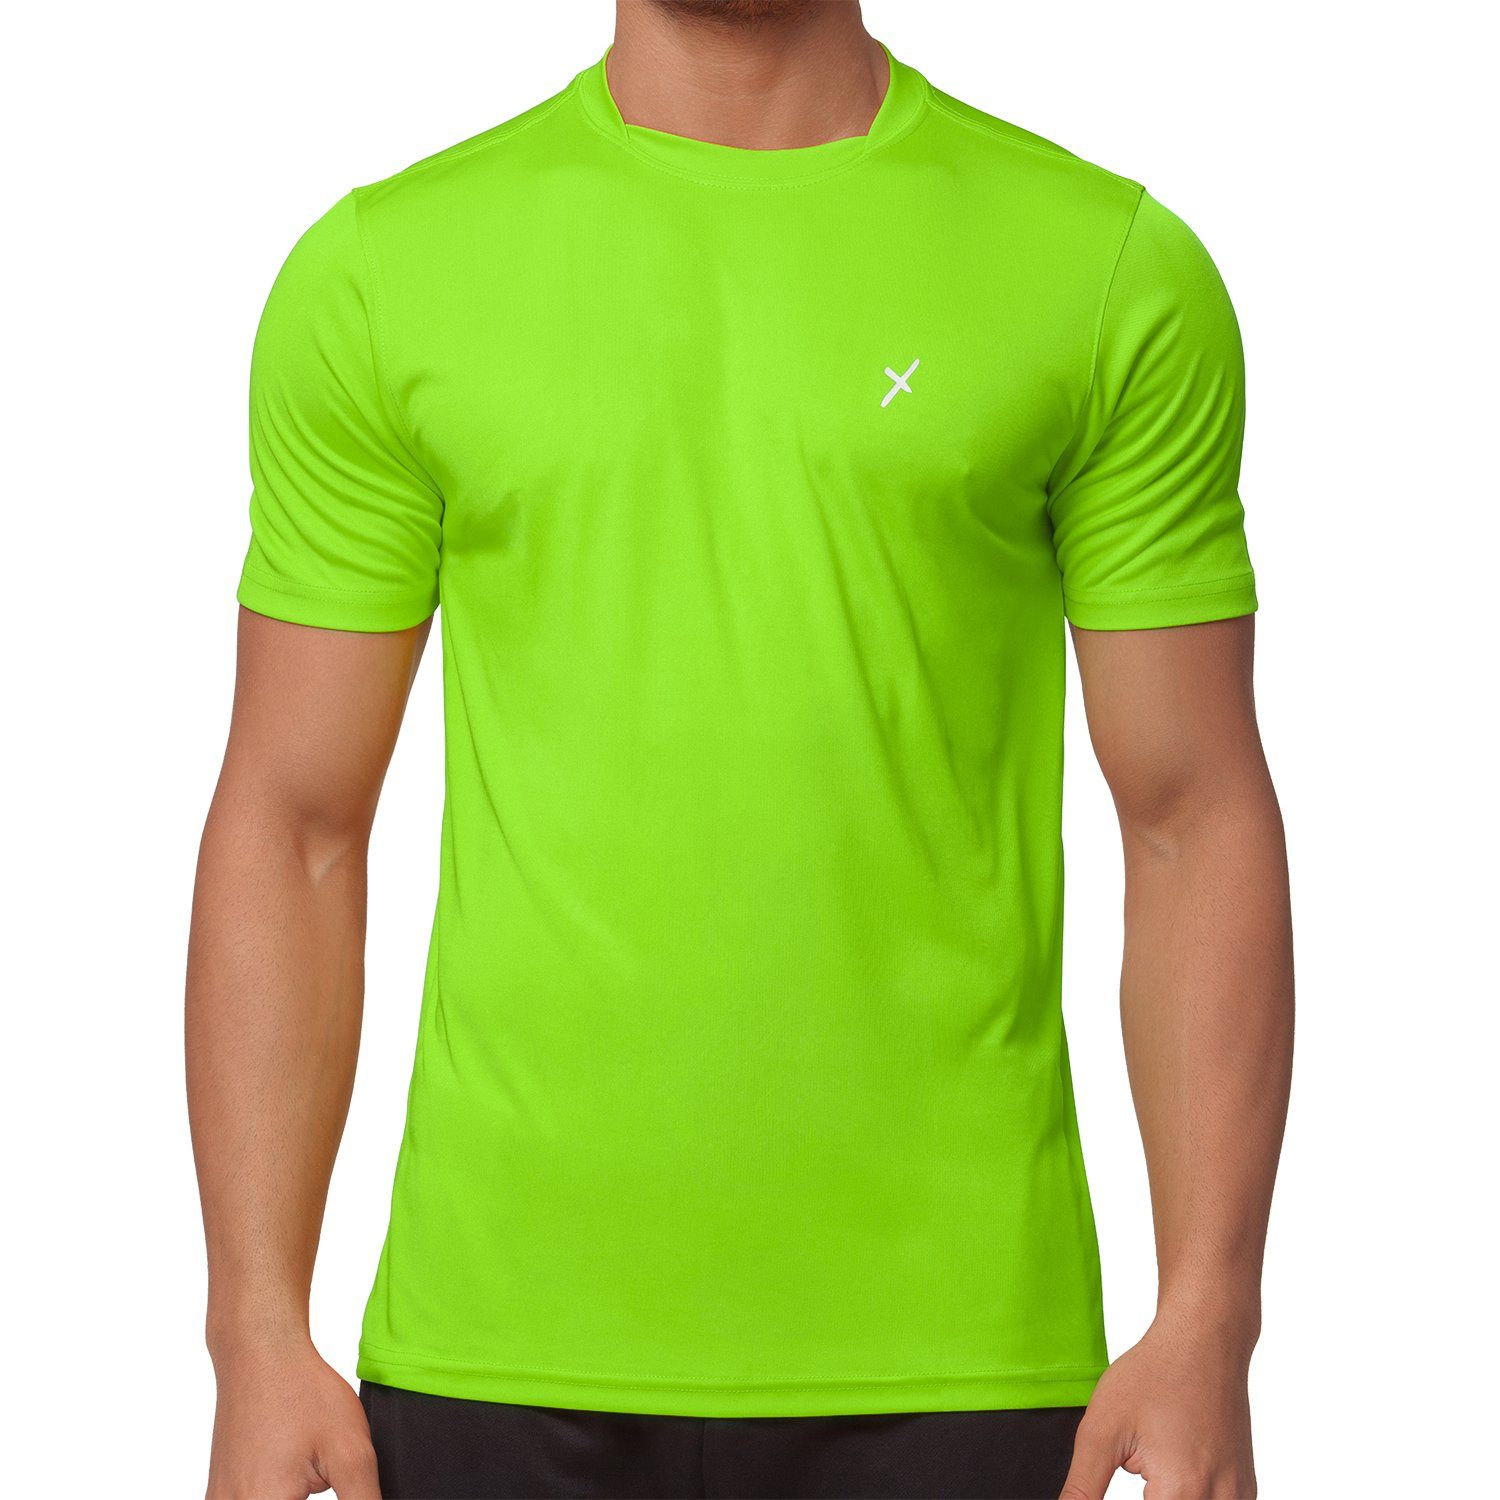 Herren Grün Sport Collection CFLEX Shirt T-Shirt Trainingsshirt Fitness Sportswear